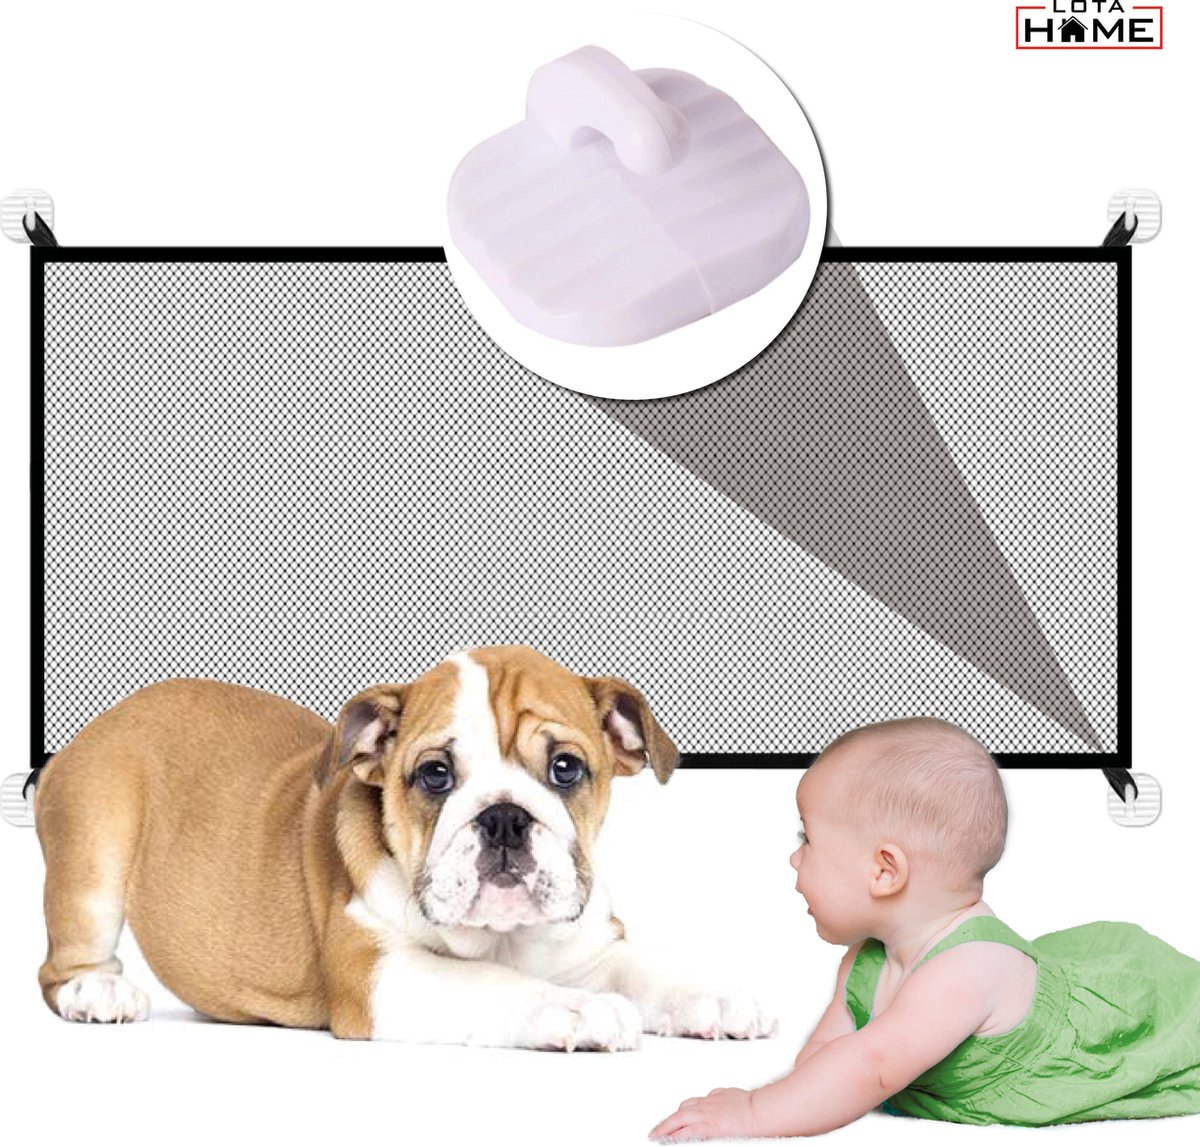 Traphekje zonder Boren - Oprolbaar Traphekje - 110x72cm - Voor Baby's, Peuters & Huisdieren - Veiligheidshekje - Veiligheidshekje voor Baby - Zwart